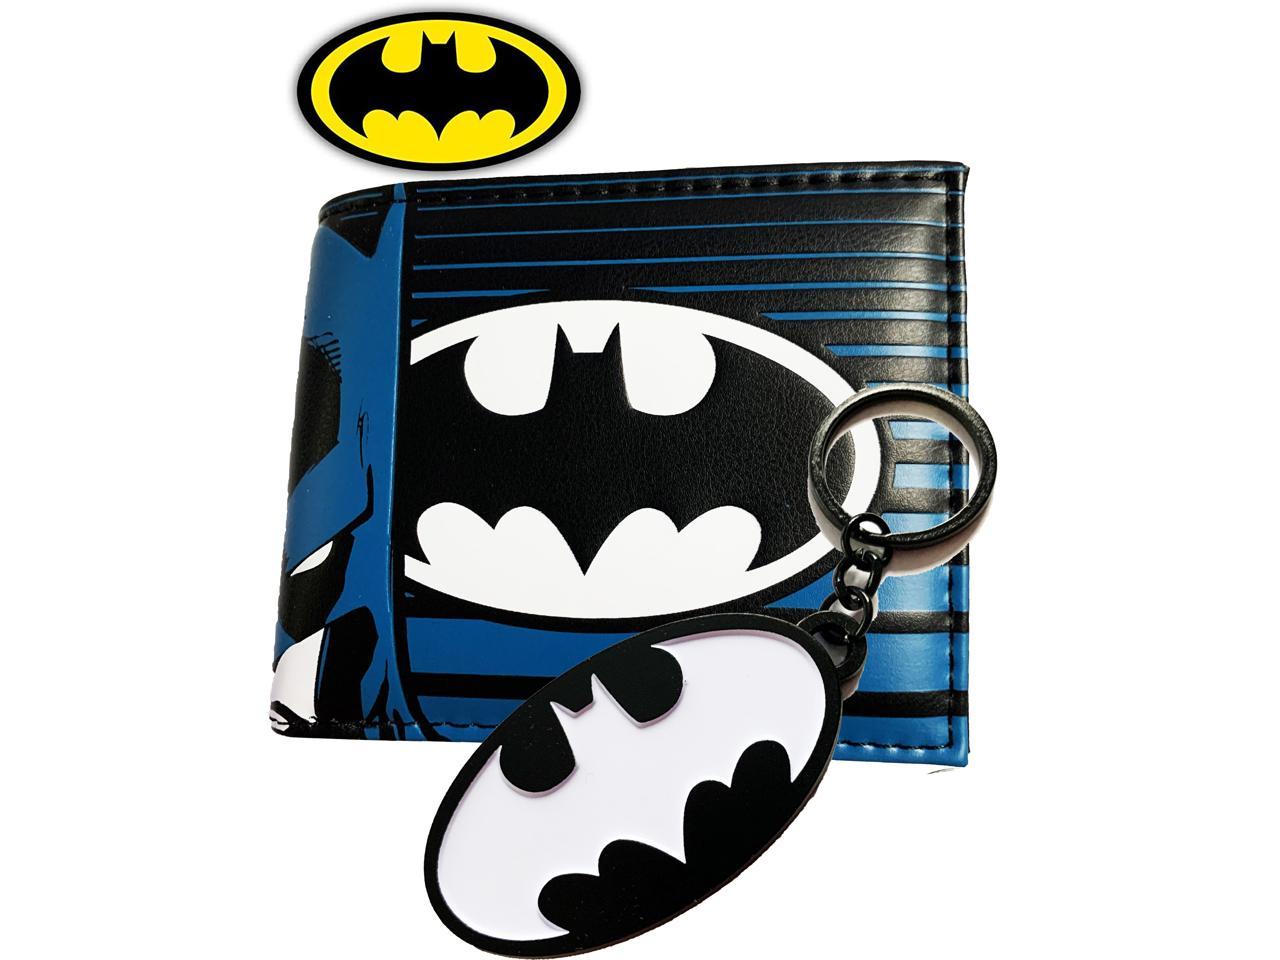 Batman Accessory DC Comics Gift Batman Wallet DC Comics Accessories Batman Gift